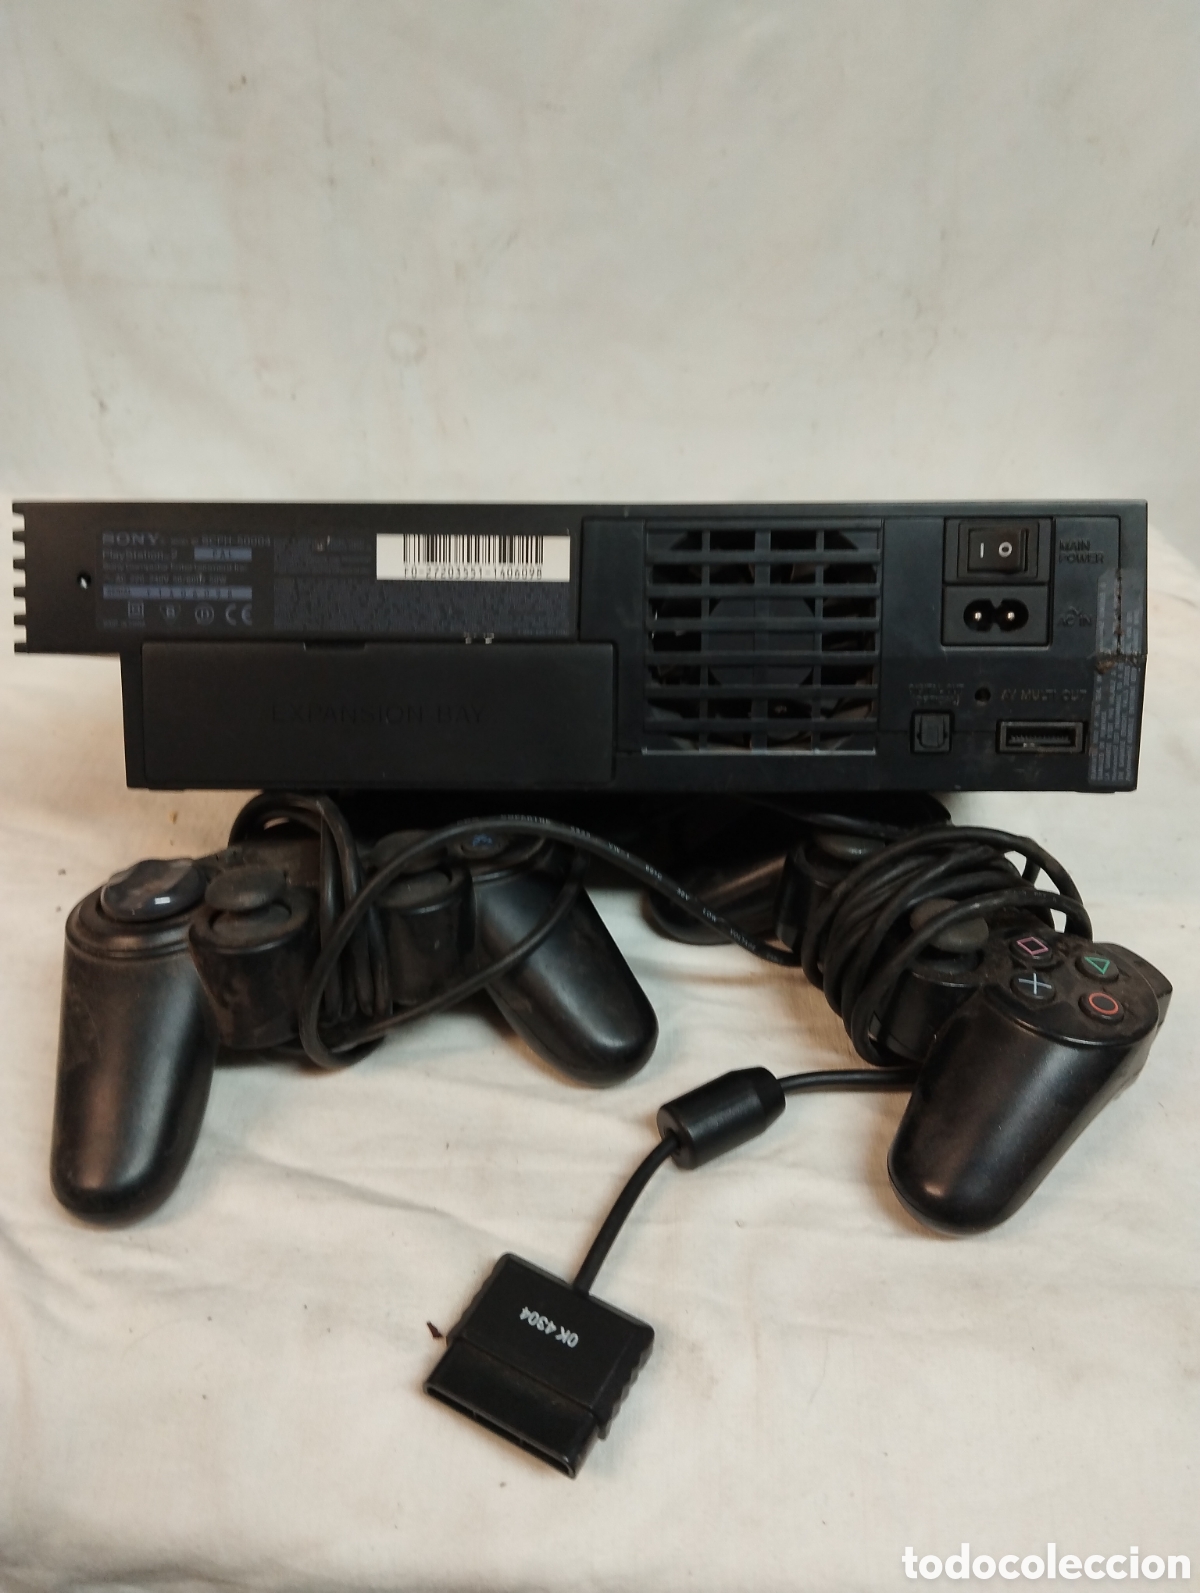 consola ps2 (modelo scph 39004) (2002) - Acquista Videogiochi e console PS2  su todocoleccion